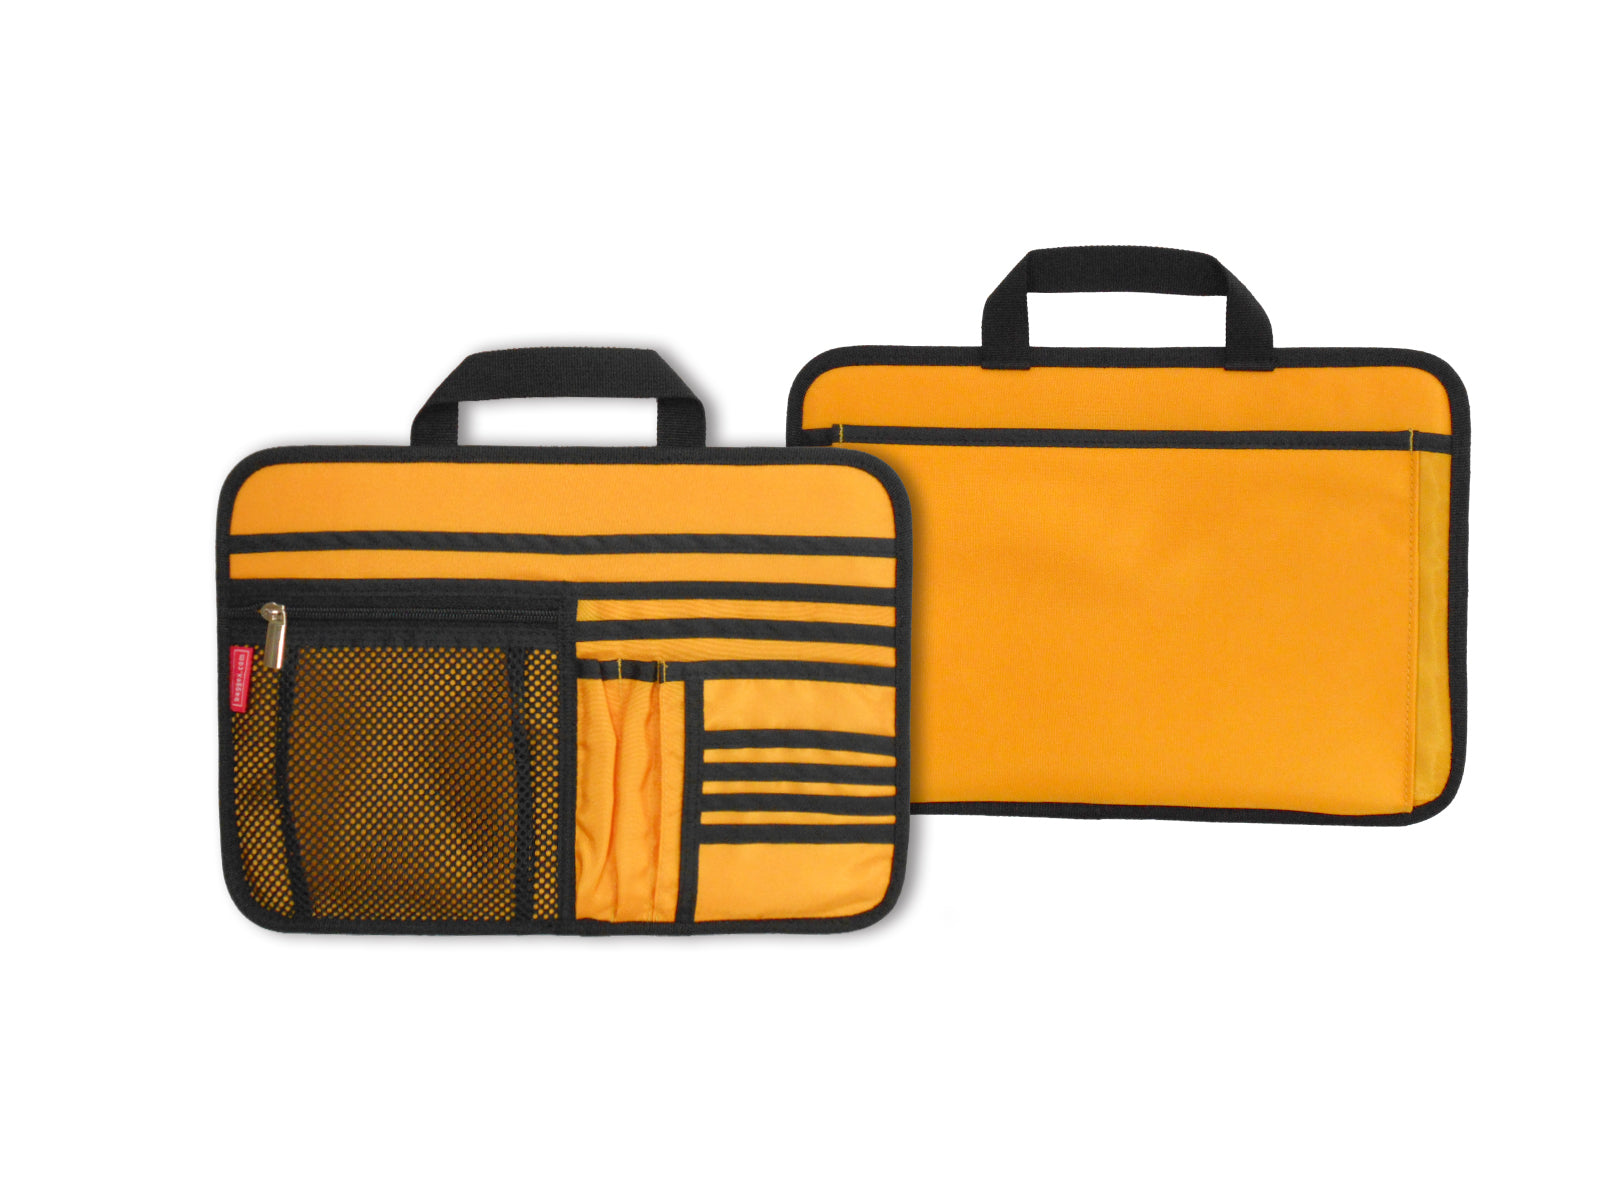 Lckaey Geldbörsen-Organizer-Einsatz für Chanel 19 Maxi-Taschen-Organizer  mit seitlicher Reißverschlusstasche, beige 1016, 33 x 9 x 20 cm